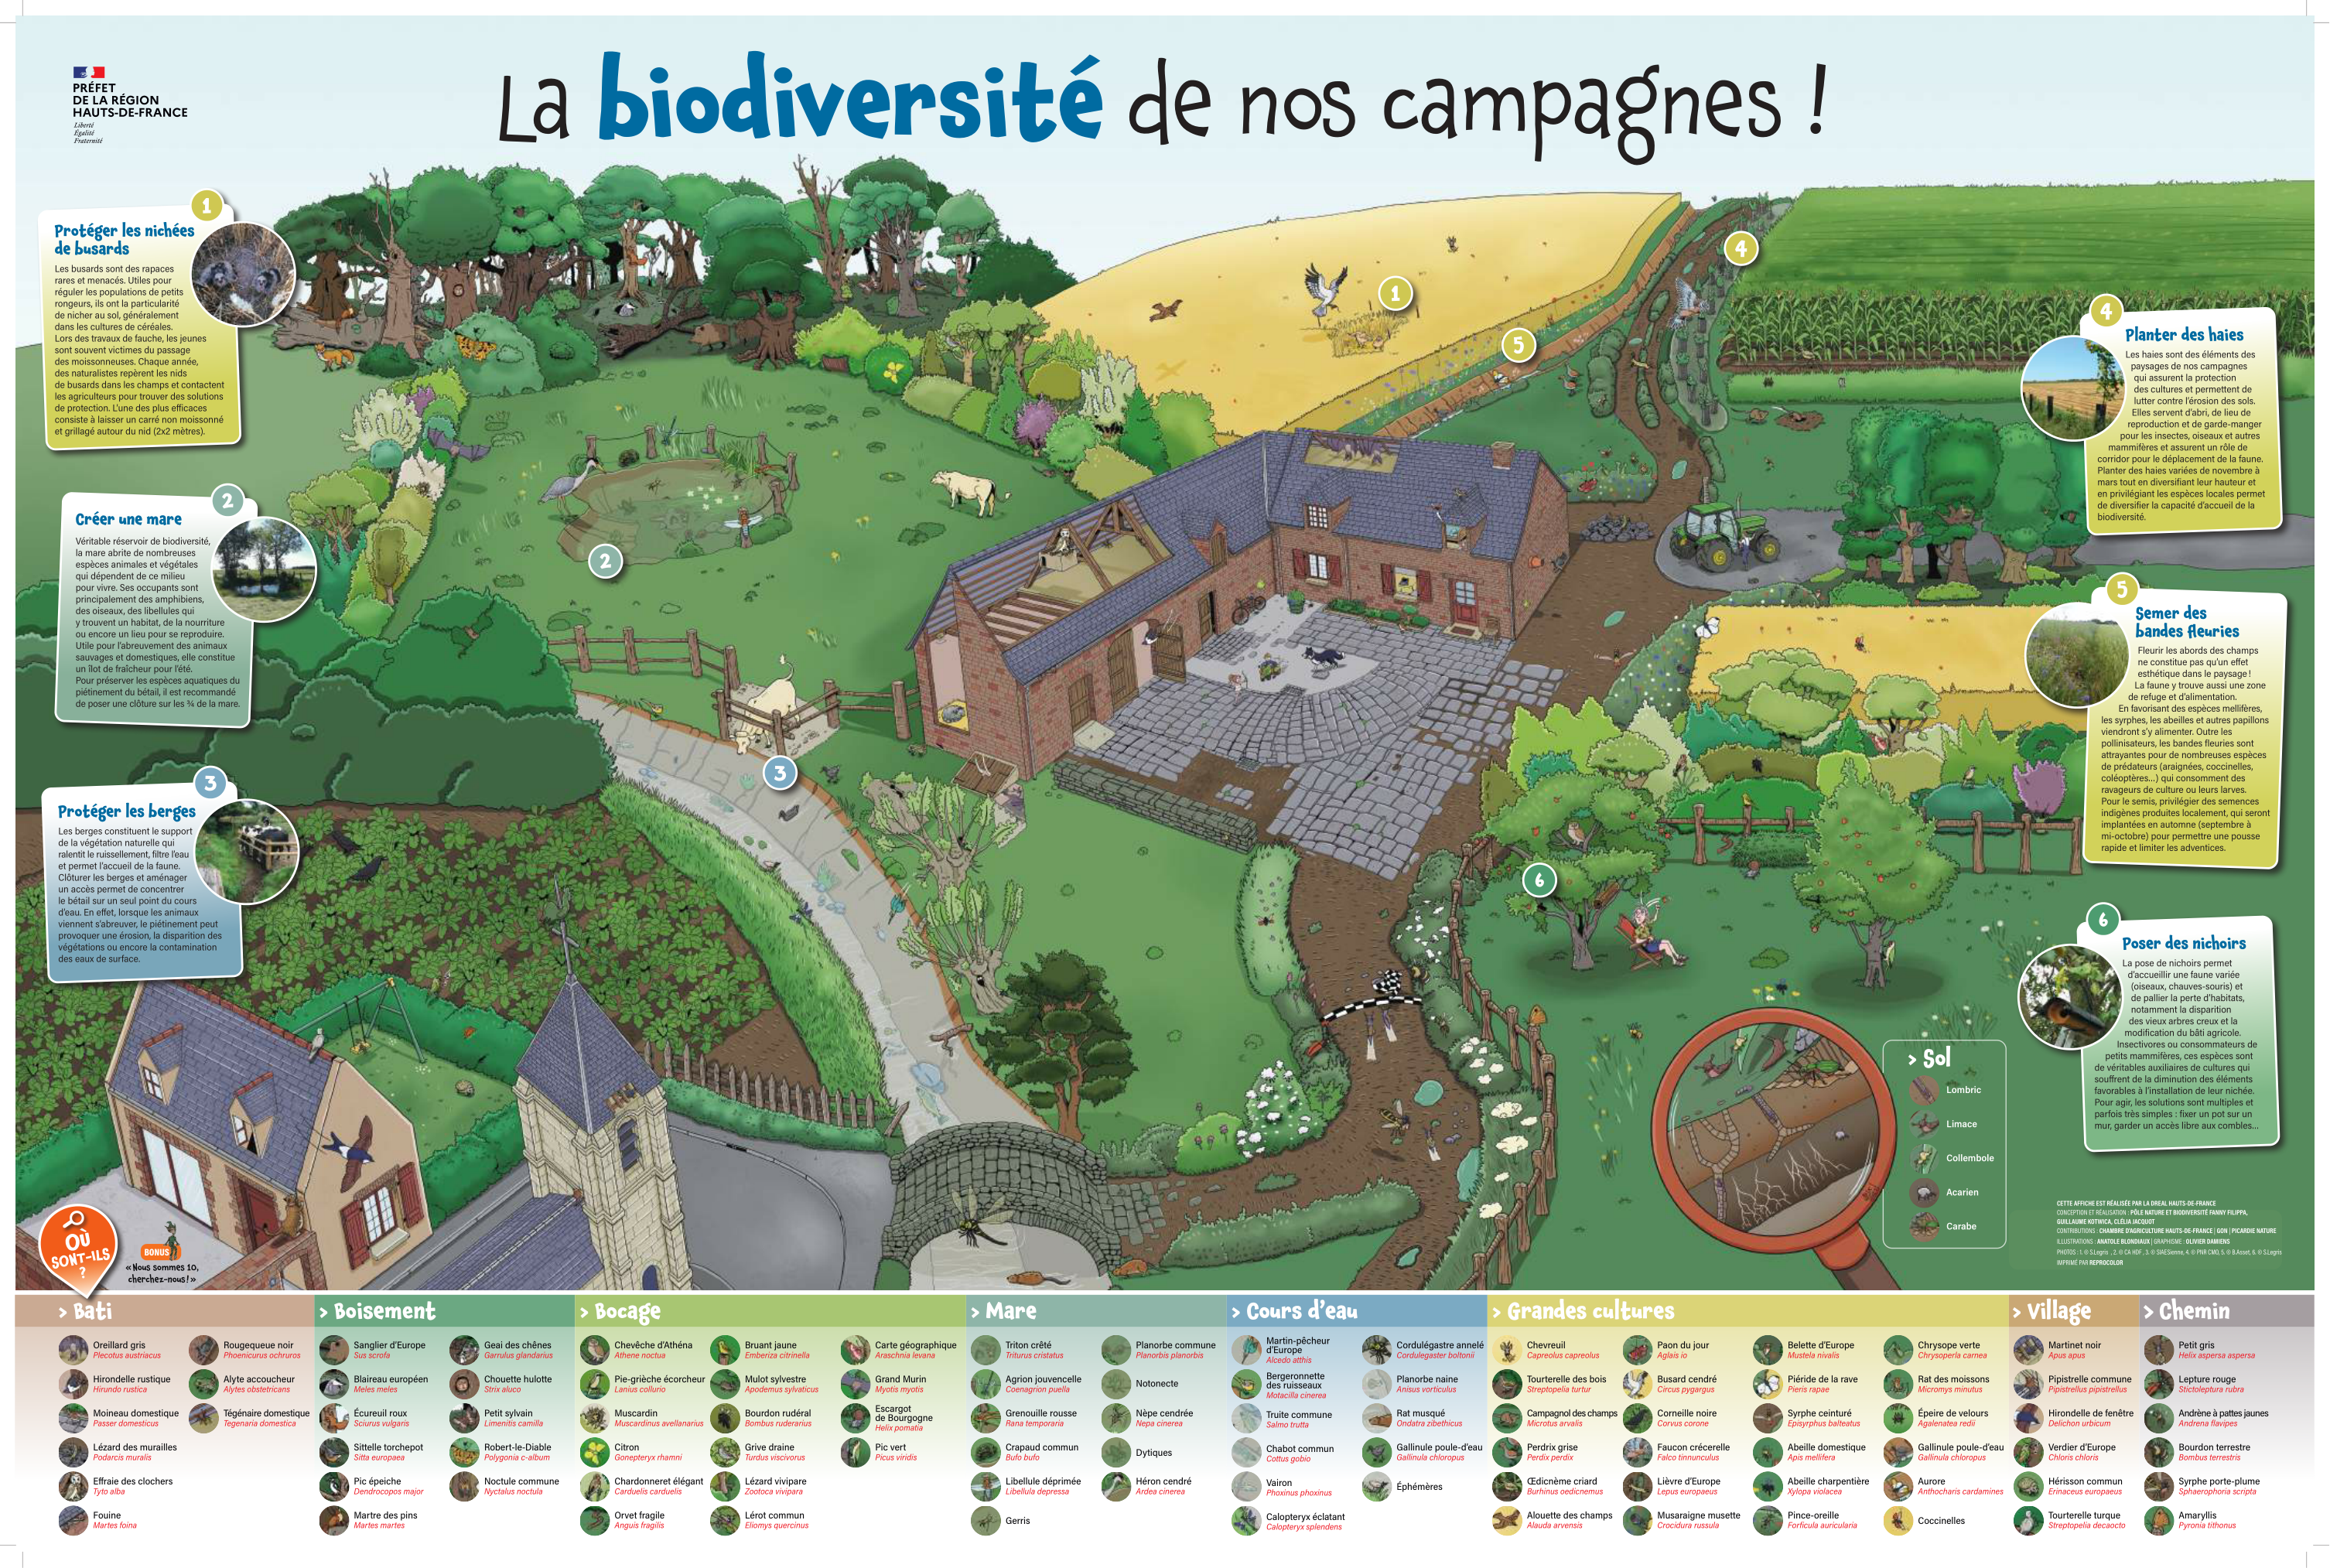 La Biodiversité de nos campagnes !